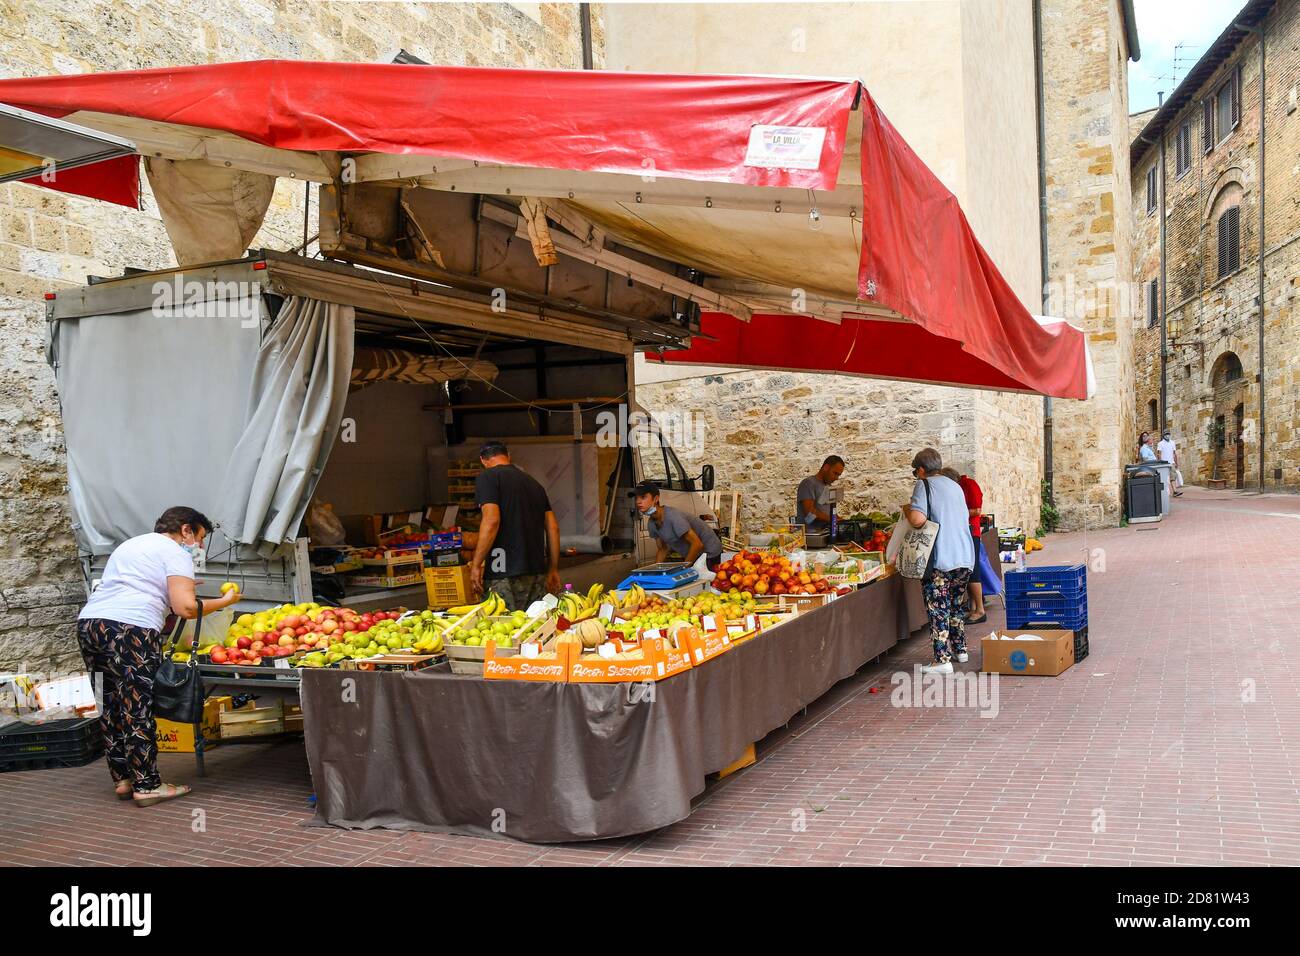 La gente acquista in un mercato di frutta e verdura nel centro storico di San Gimignano, patrimonio dell'umanità dell'UNESCO, Siena, Toscana, Italia Foto Stock